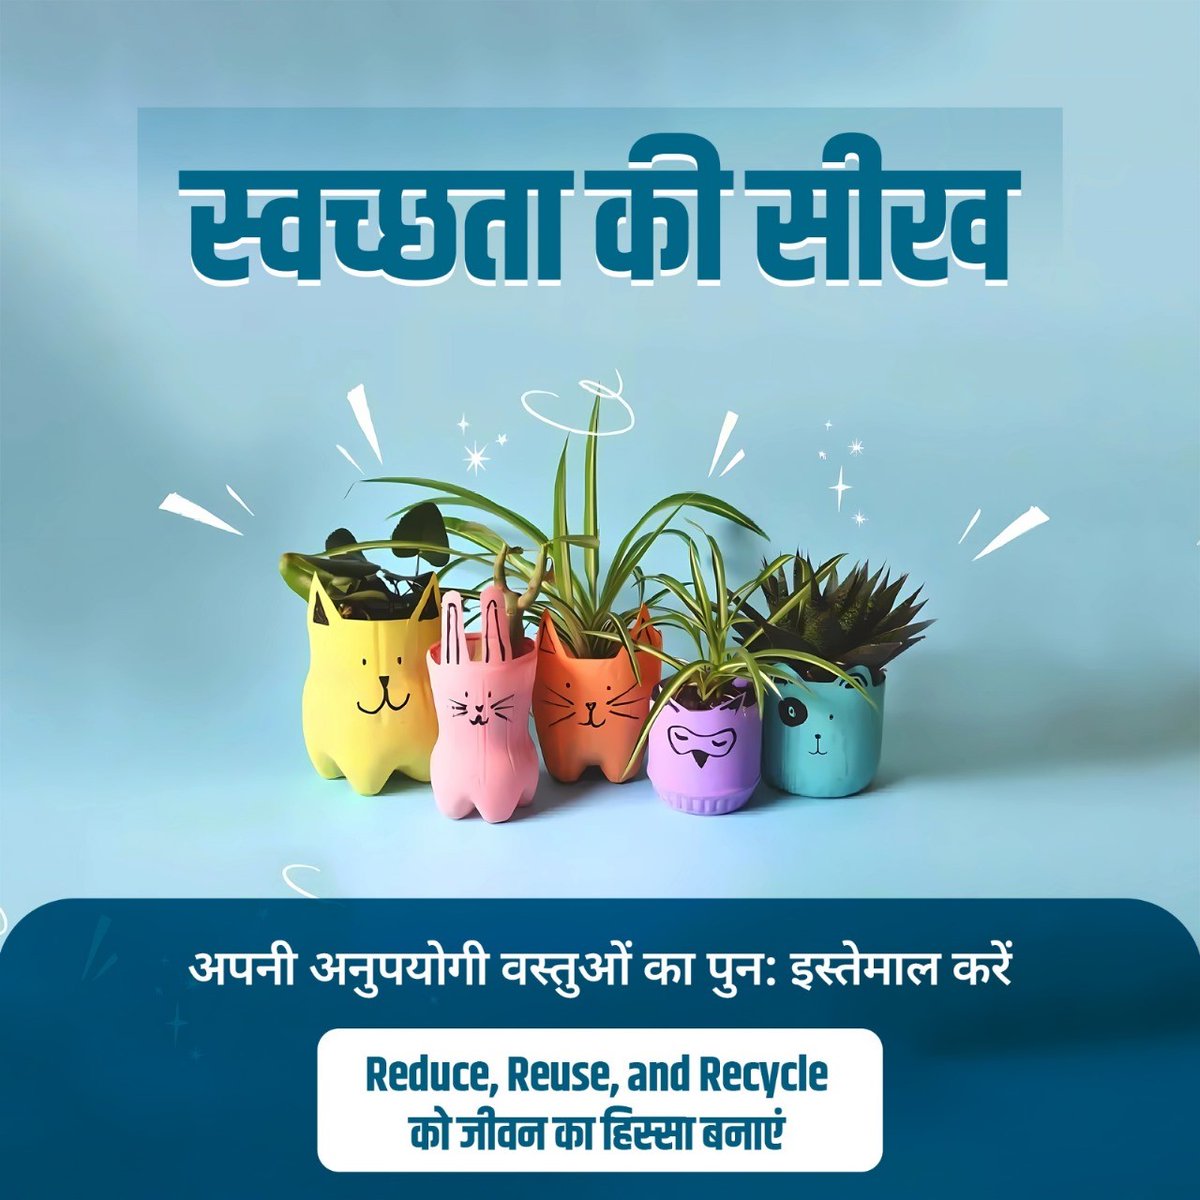 अपनी पुरानी और अनुपयोगी वस्तुओं को Reduce, Reuse और Recycle कर पुन: उपयोग में लाएं और शहरों को कचरामुक्त बनाएं। देश में स्वच्छता के प्रति एक जागरुक नागरिक की भूमिका निभाएं। #SwachhataKiSeekh #SwachhBharat #GarbageFreeCities #IndiaVsGarbage #WasteSegregation #RRR